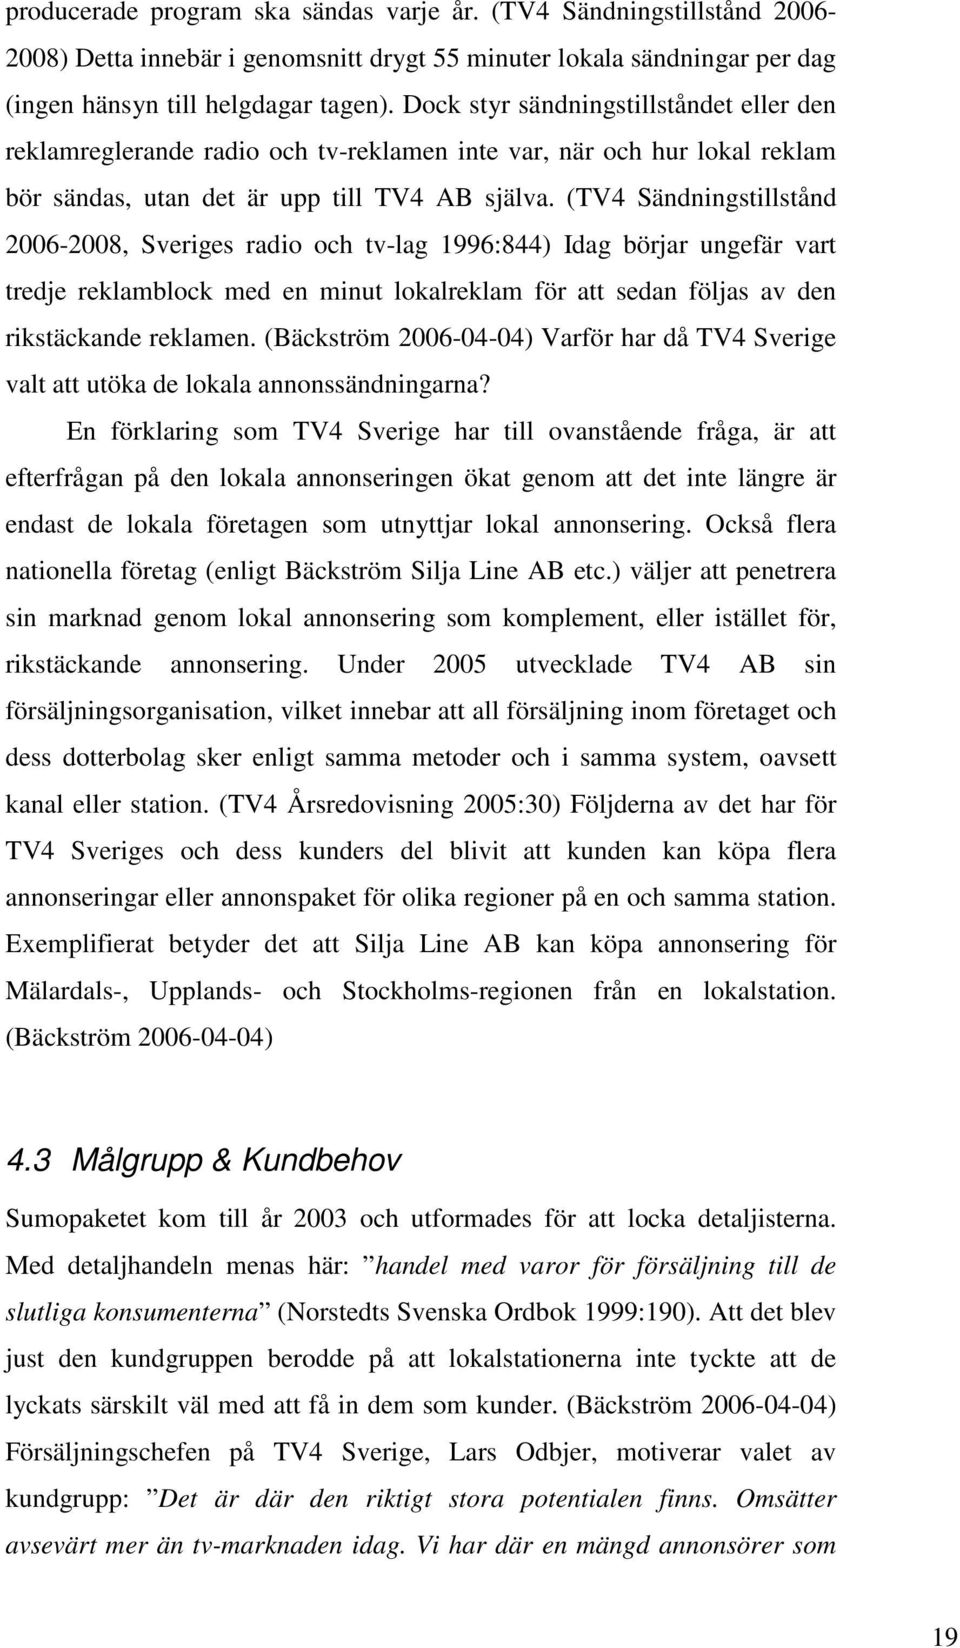 (TV4 Sändningstillstånd 2006-2008, Sveriges radio och tv-lag 1996:844) Idag börjar ungefär vart tredje reklamblock med en minut lokalreklam för att sedan följas av den rikstäckande reklamen.